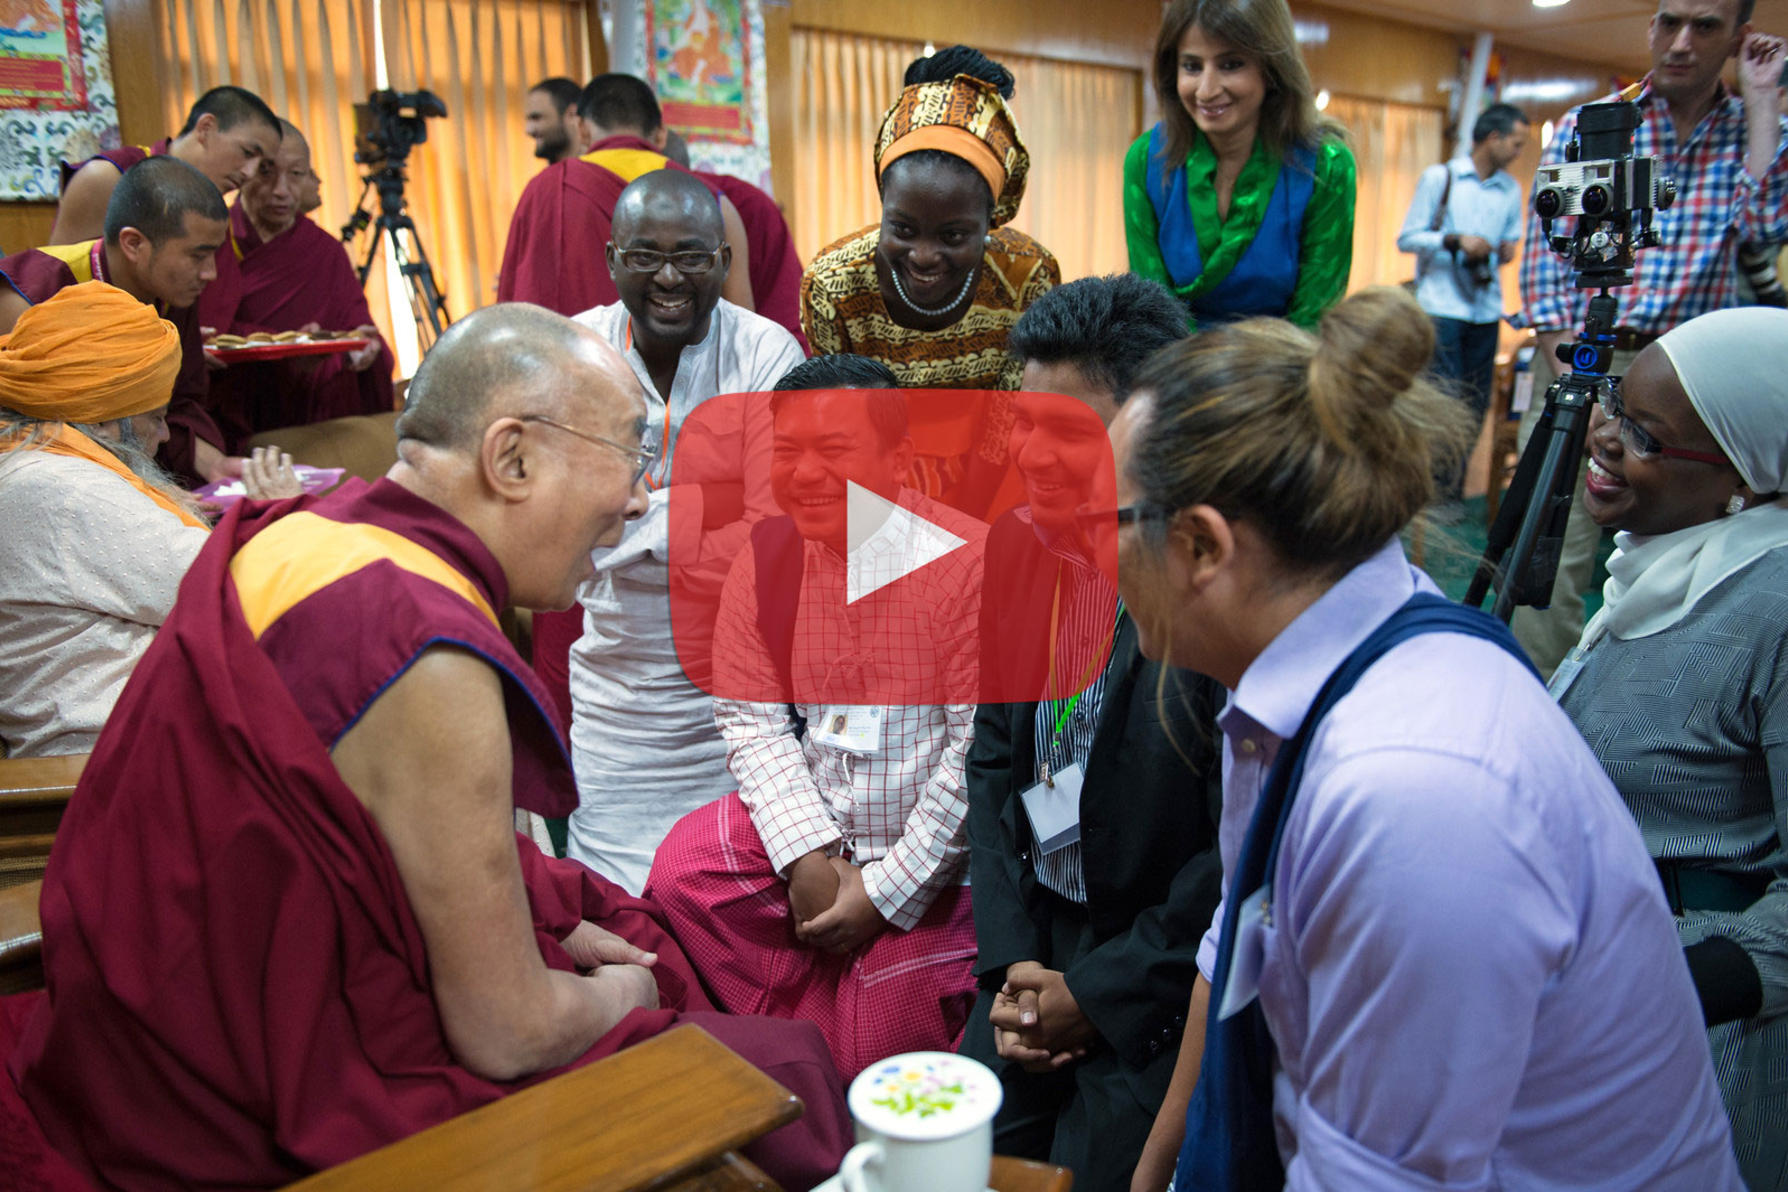 Dalai Lama video capture